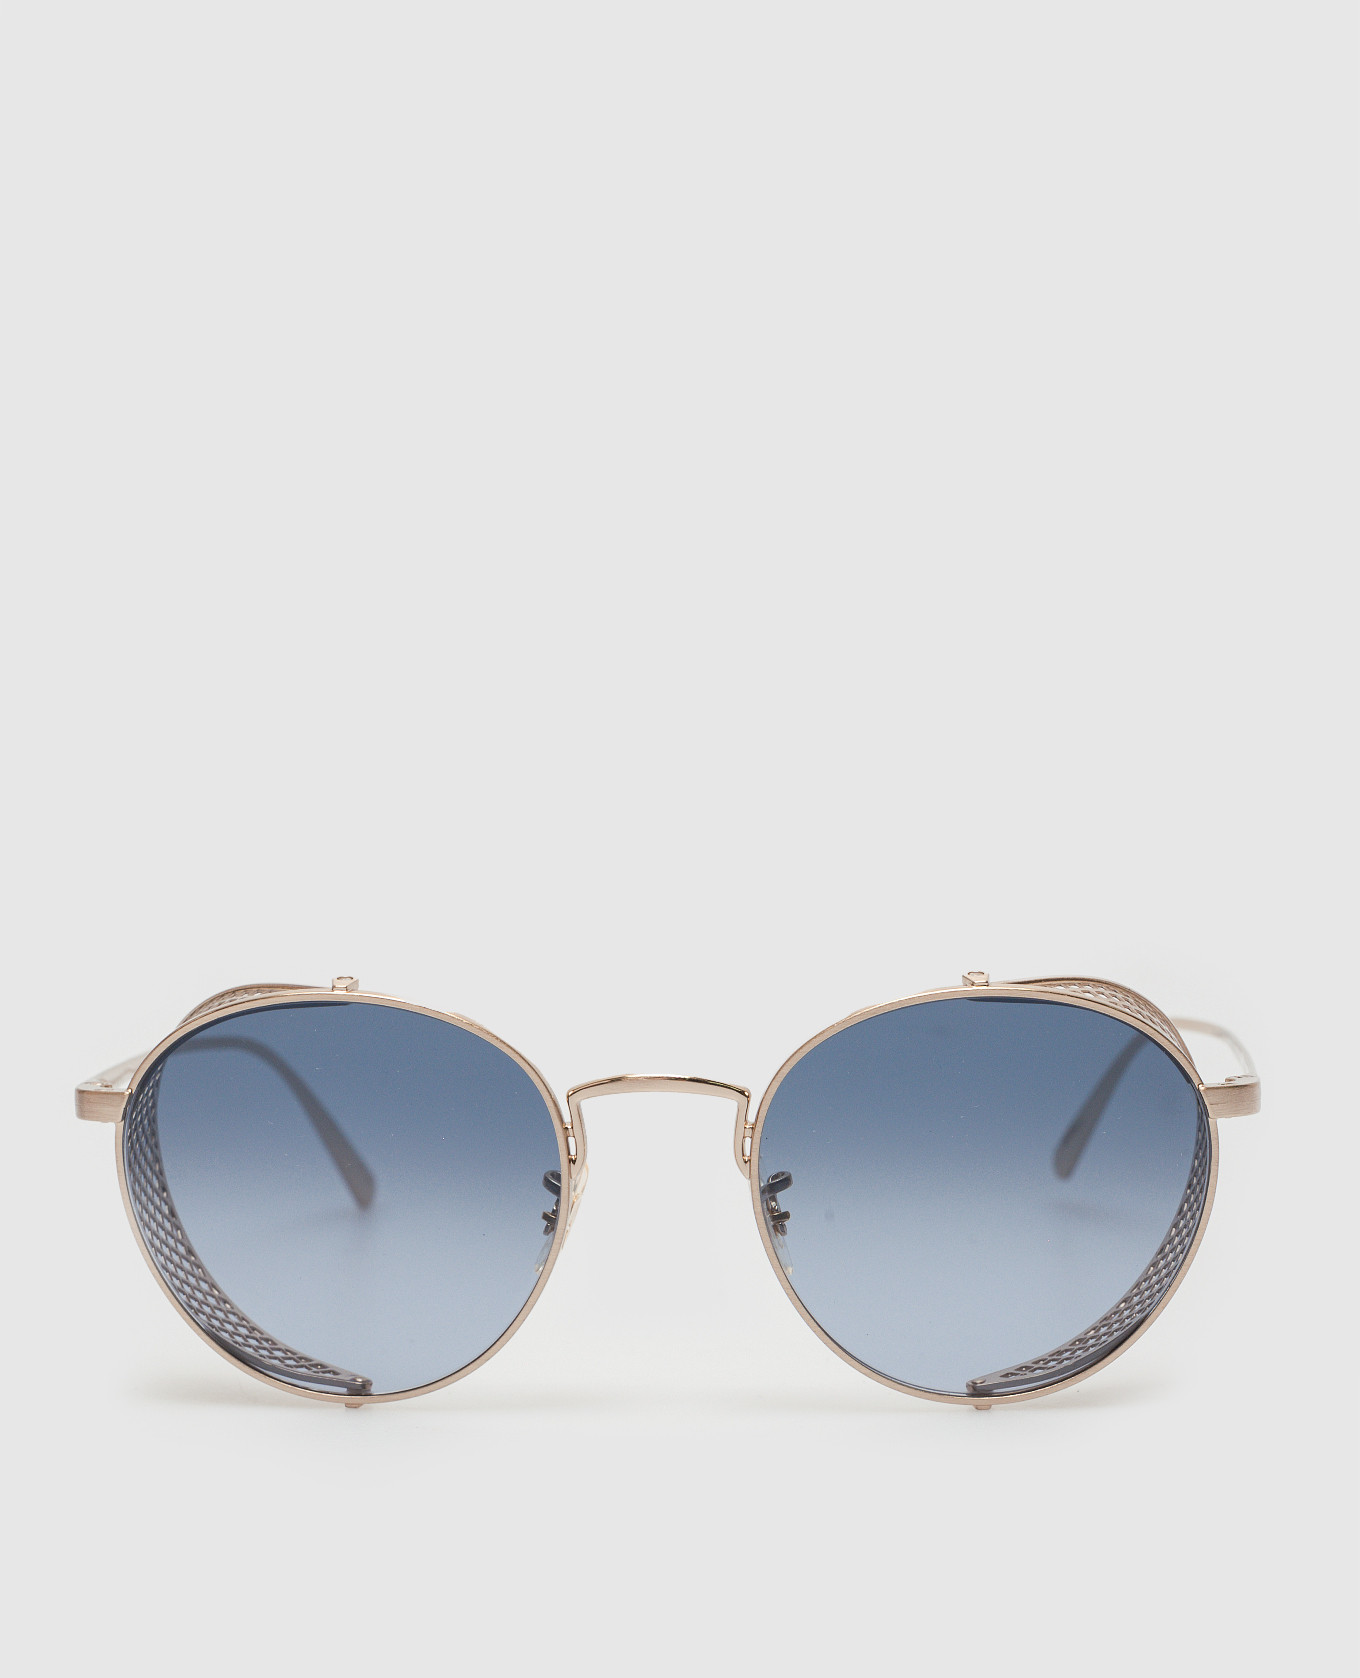 Cesarino gray sunglasses